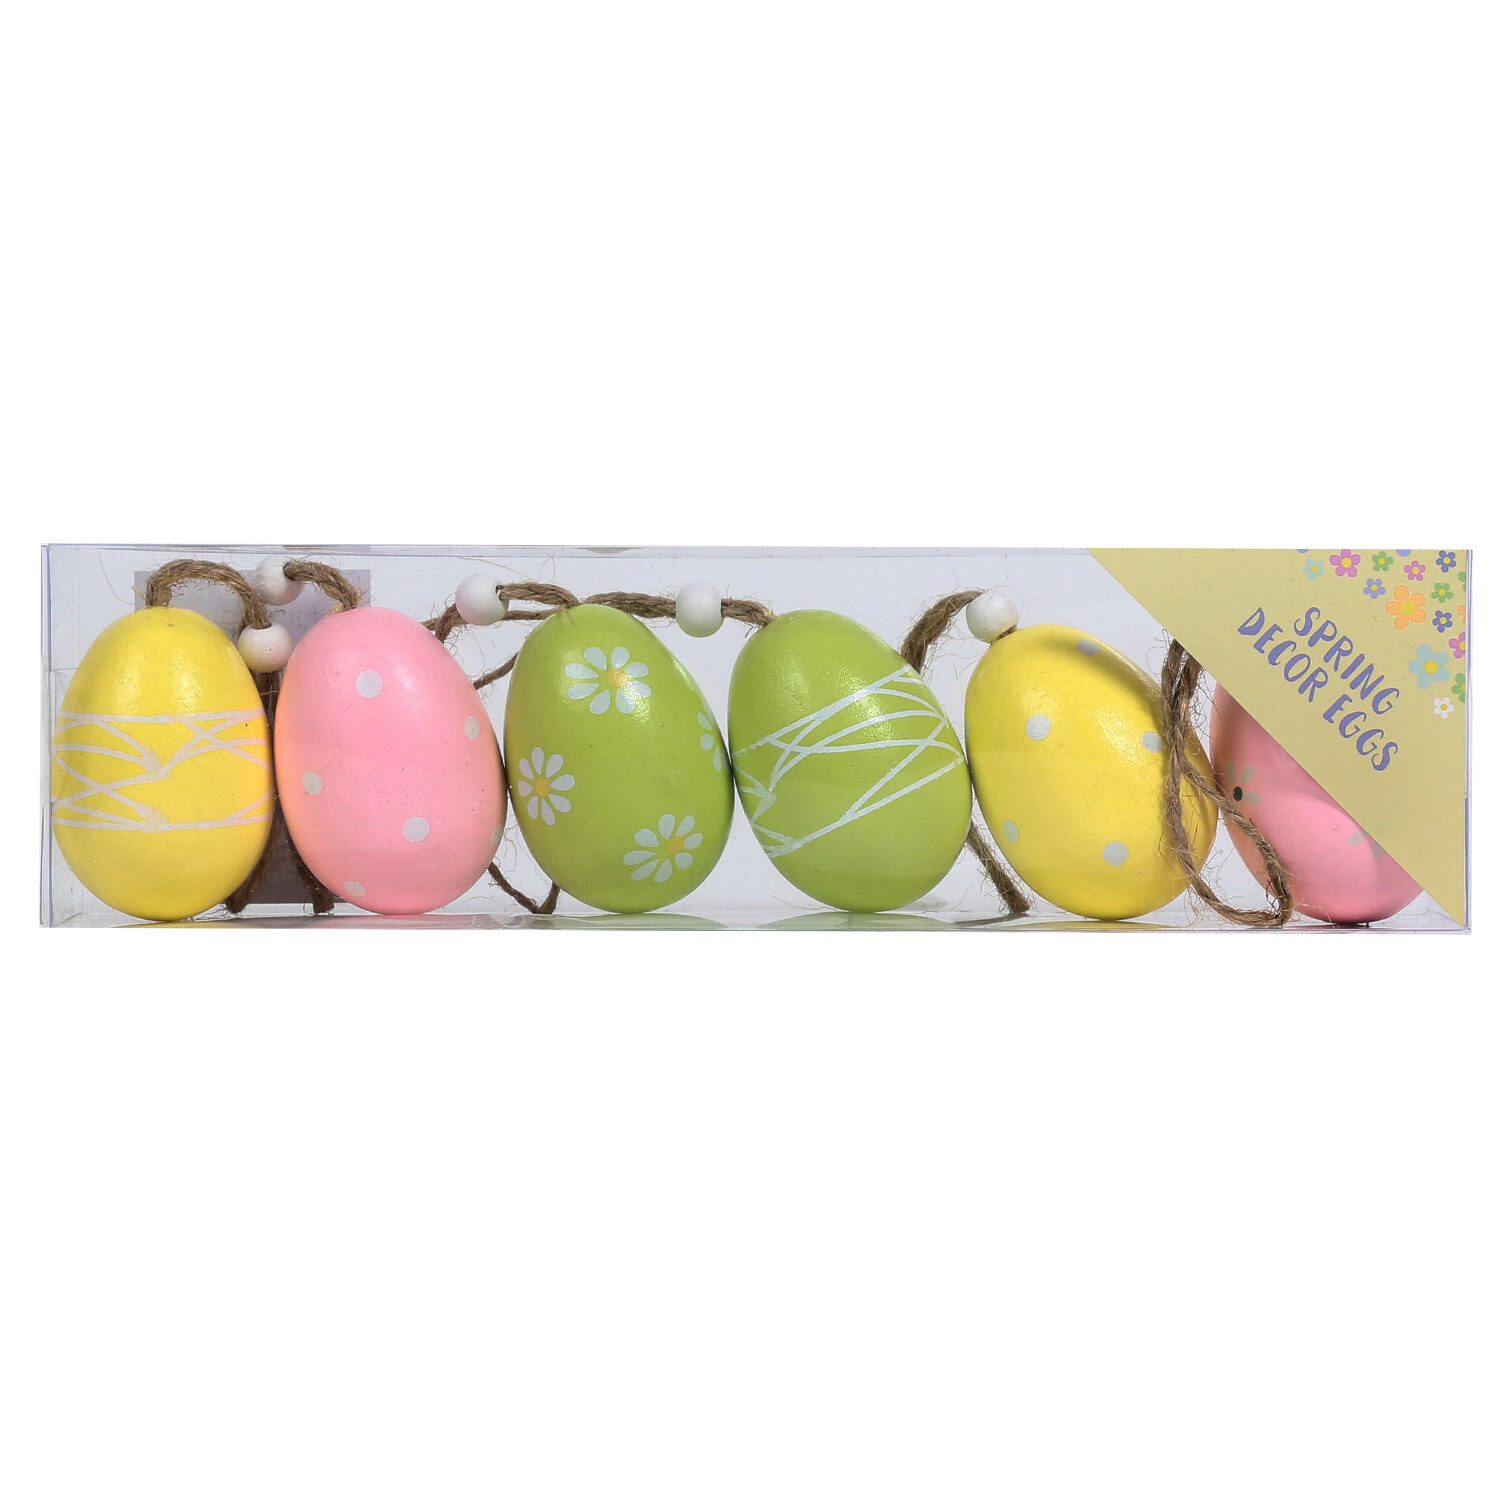 Pastel Coloured Easter Egg Decoration 6 Pack Image